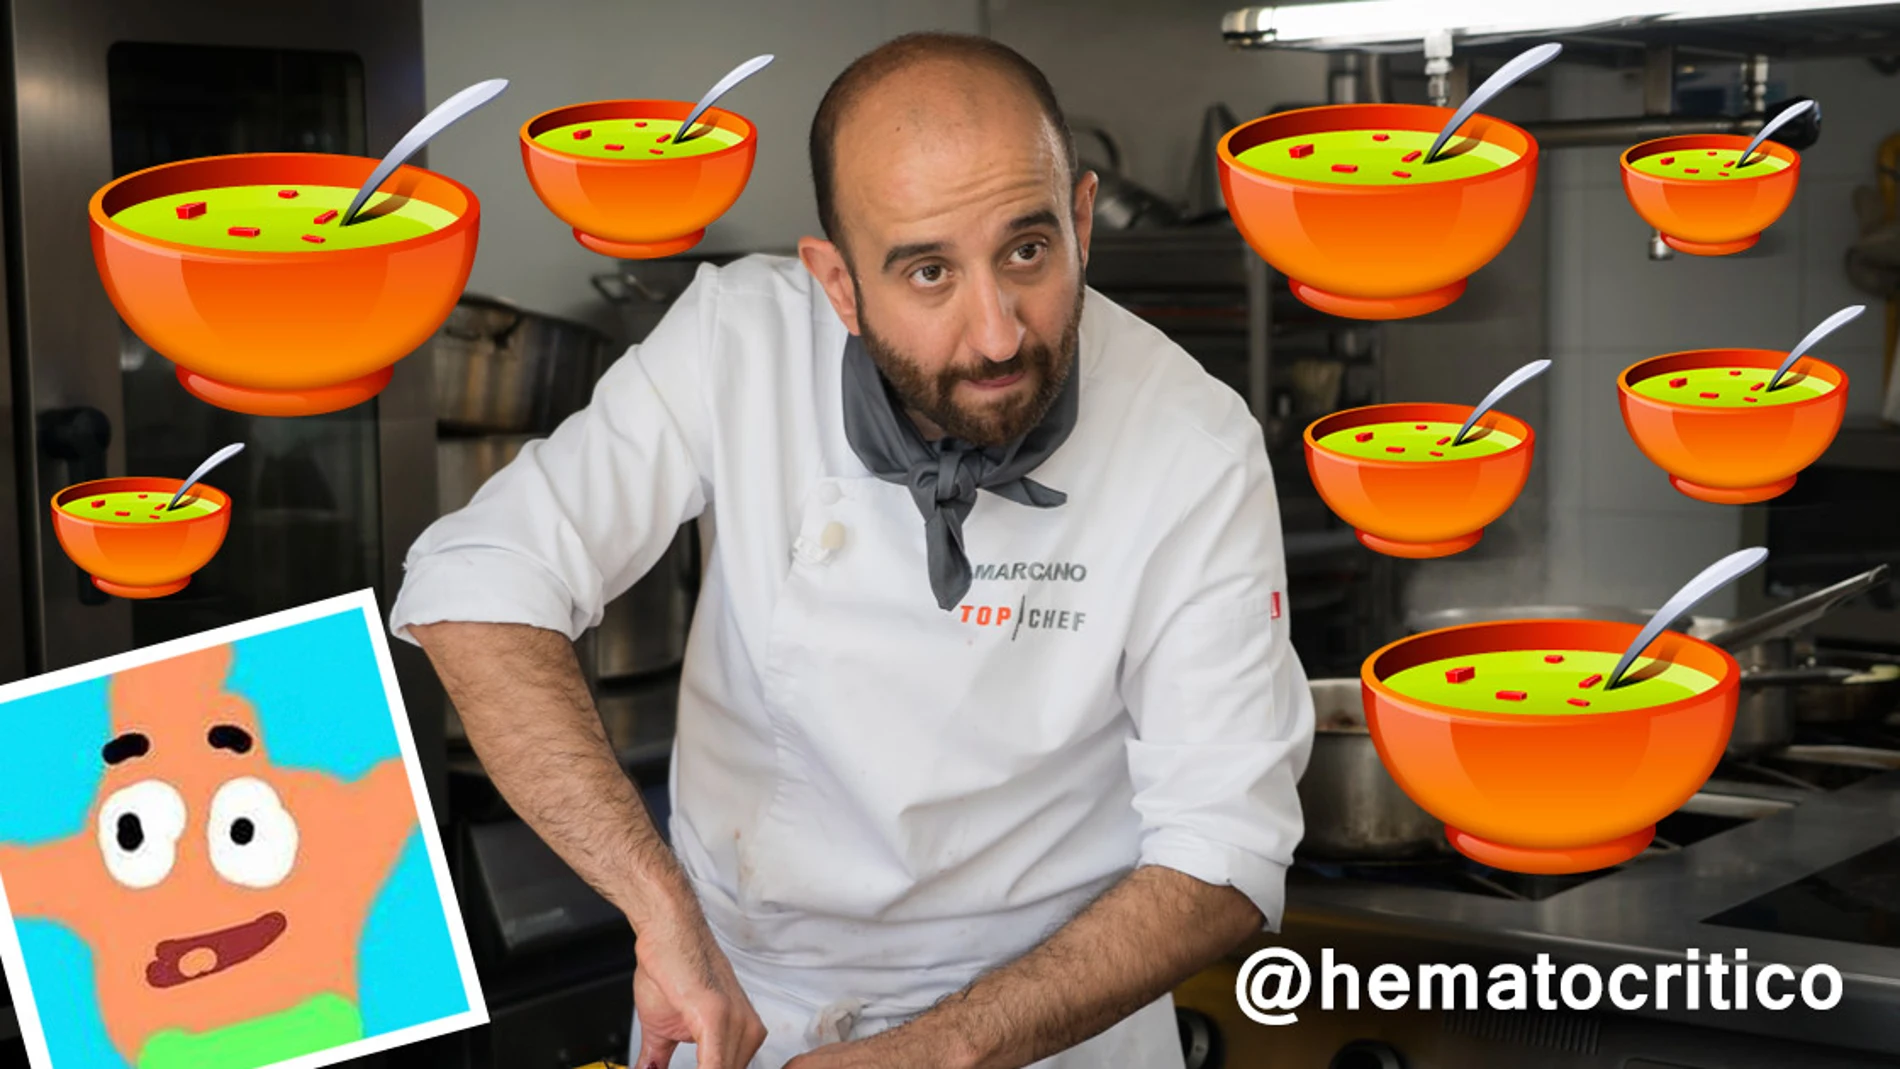 "Marcano: tenemos sopa, insisto en la sopa, la sopa me gusta más", por @Hematocritico